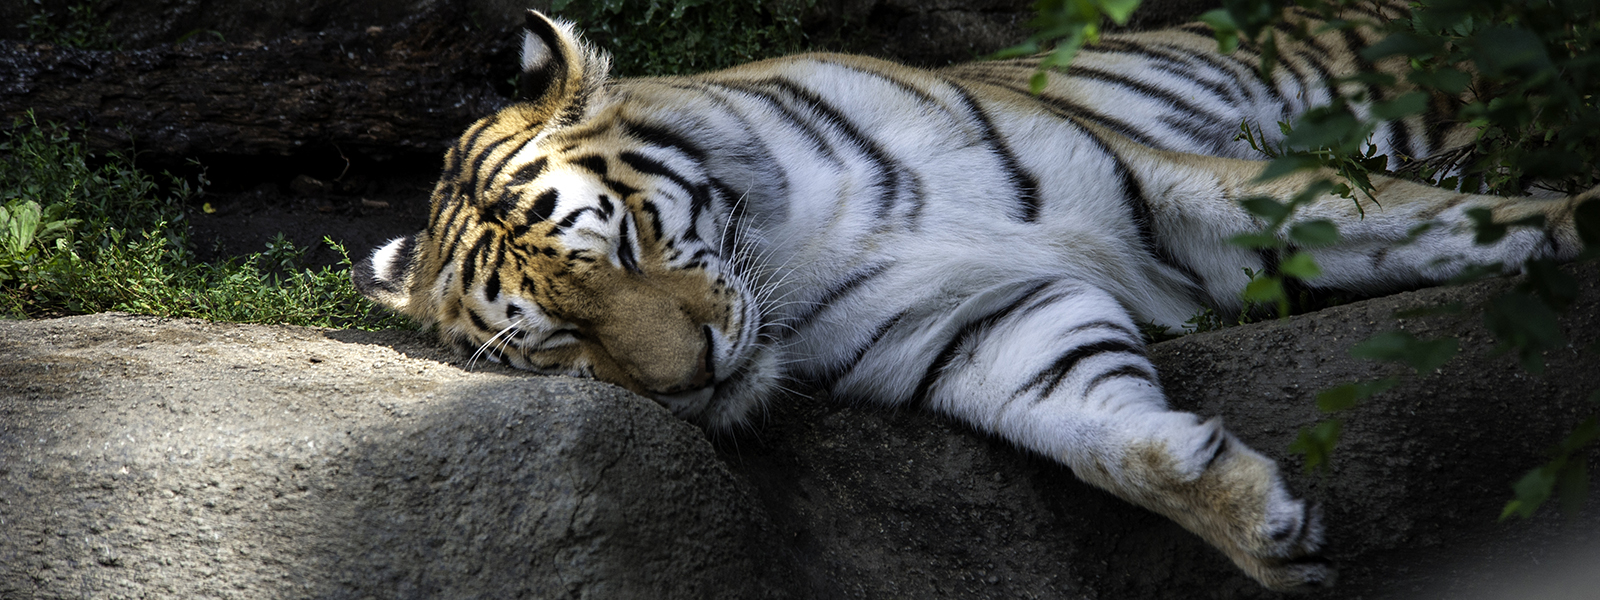 Tiger Sleeping